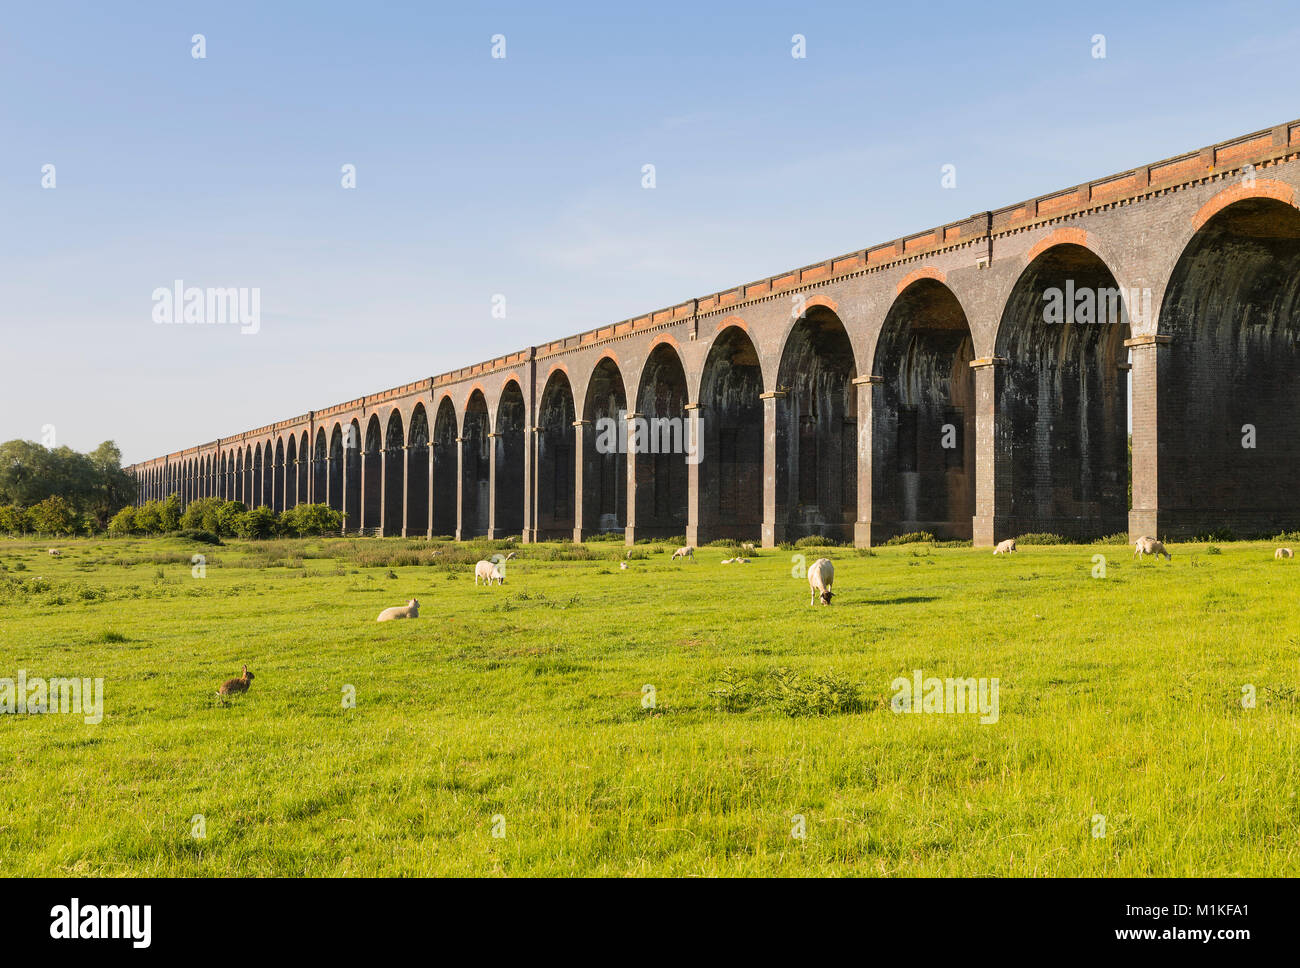 Harringworth viaducto ferroviario que muestra una selección de los ochenta y dos arcos. Foto de stock